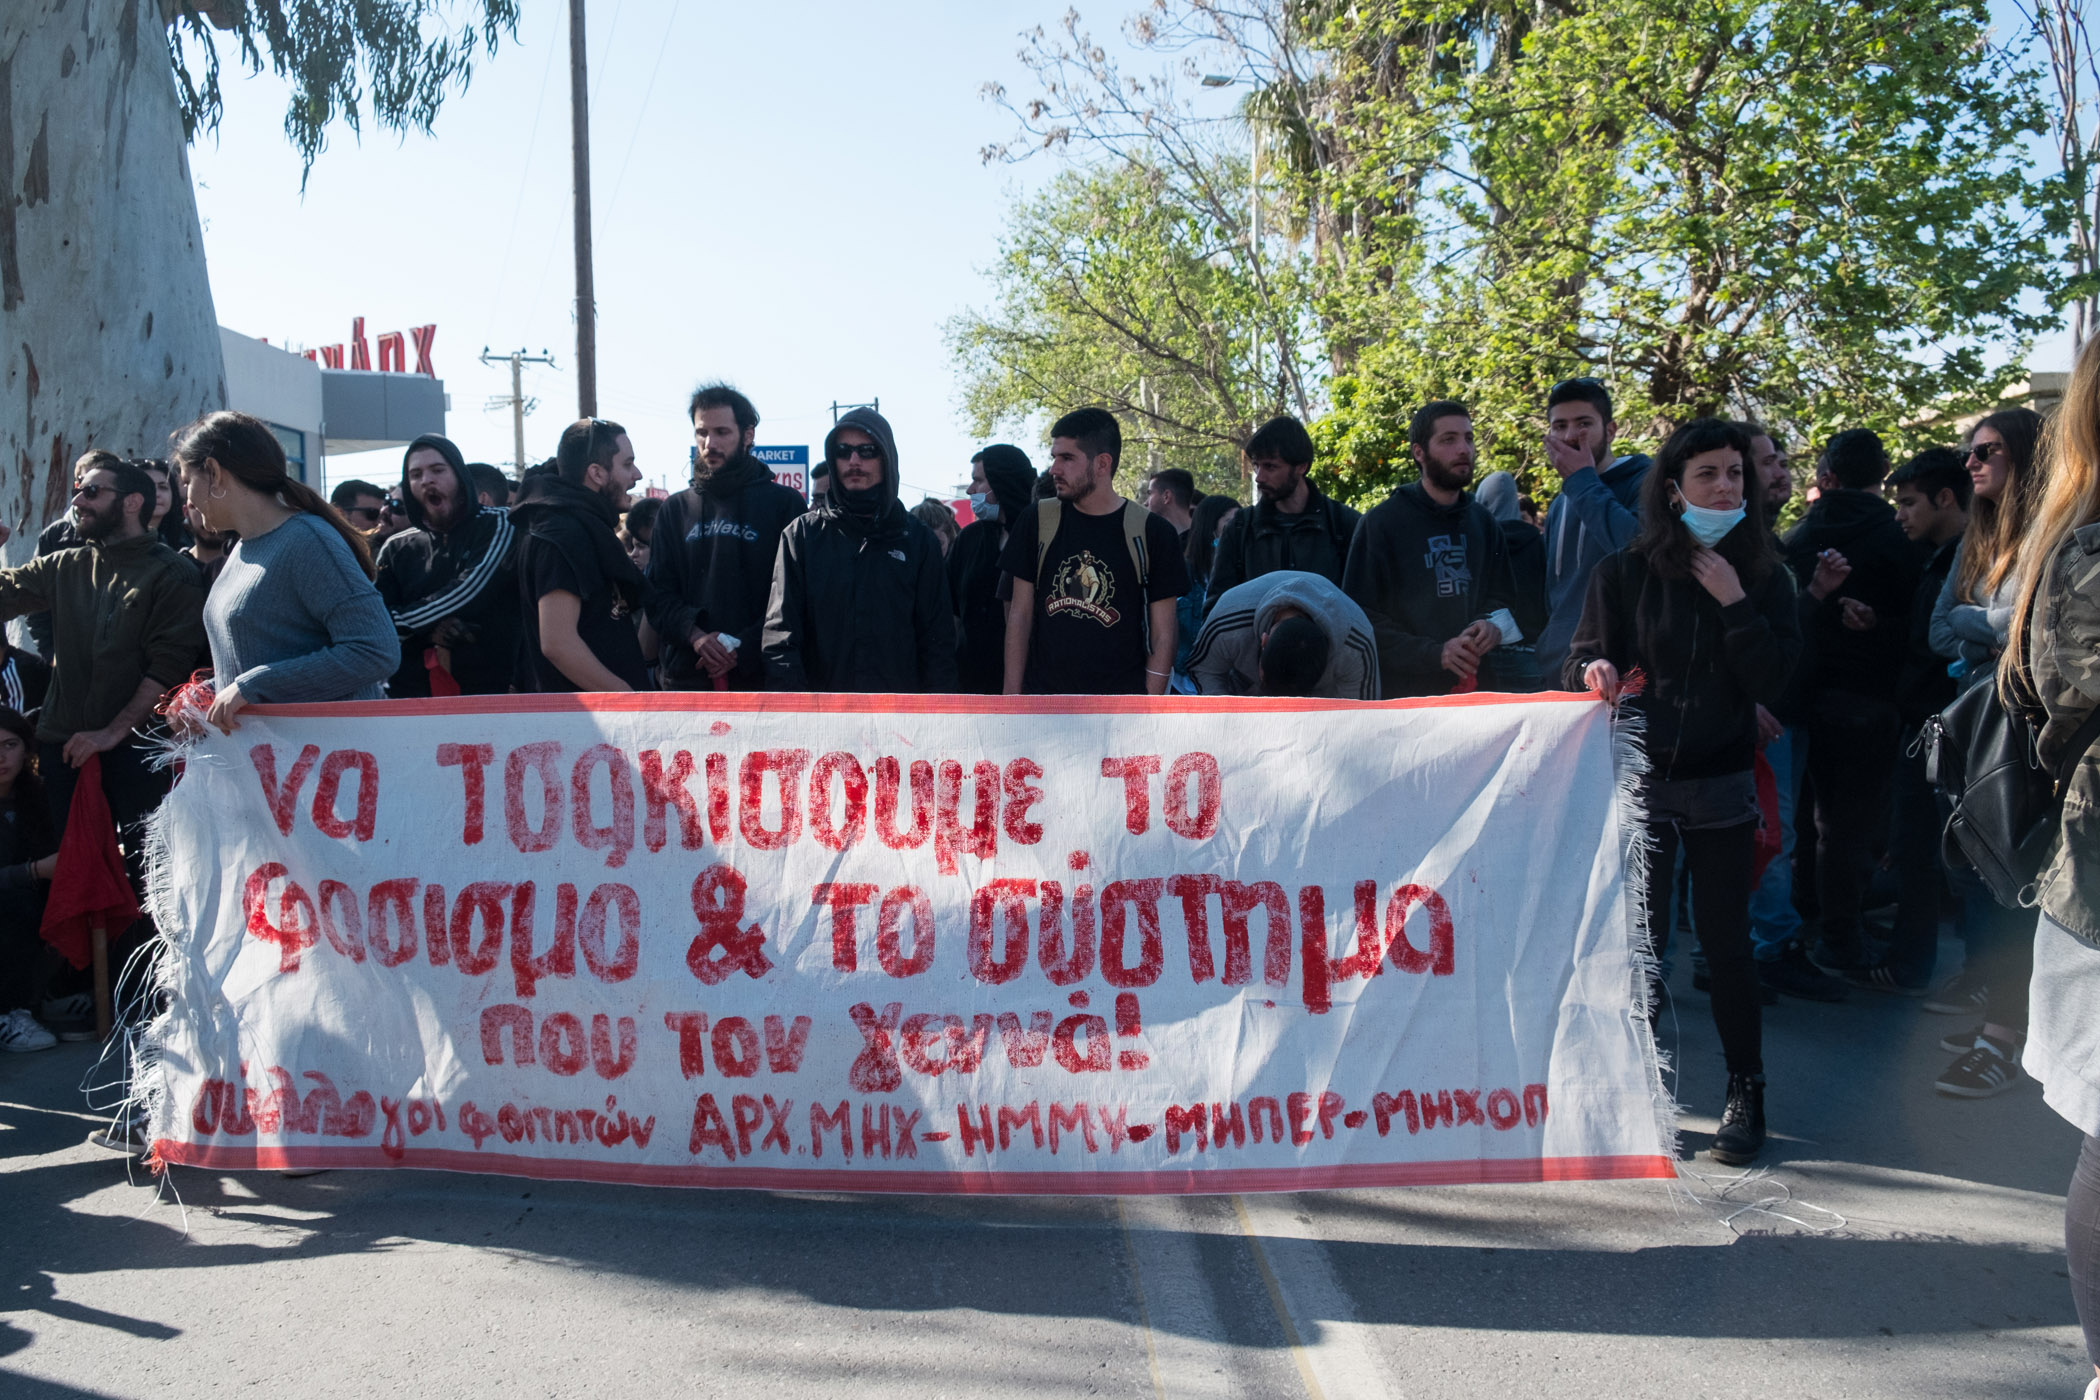 Η Ν.Ε. Χανίων του ΣΥΡΙΖΑ για τα νέα γραφεία Χρυσής Αυγής στα Χανιά: Μπορεί να γίνει ορμητήριο επιθέσεων – Η αντιφασιστική δράση οφείλει να είναι ειρηνική